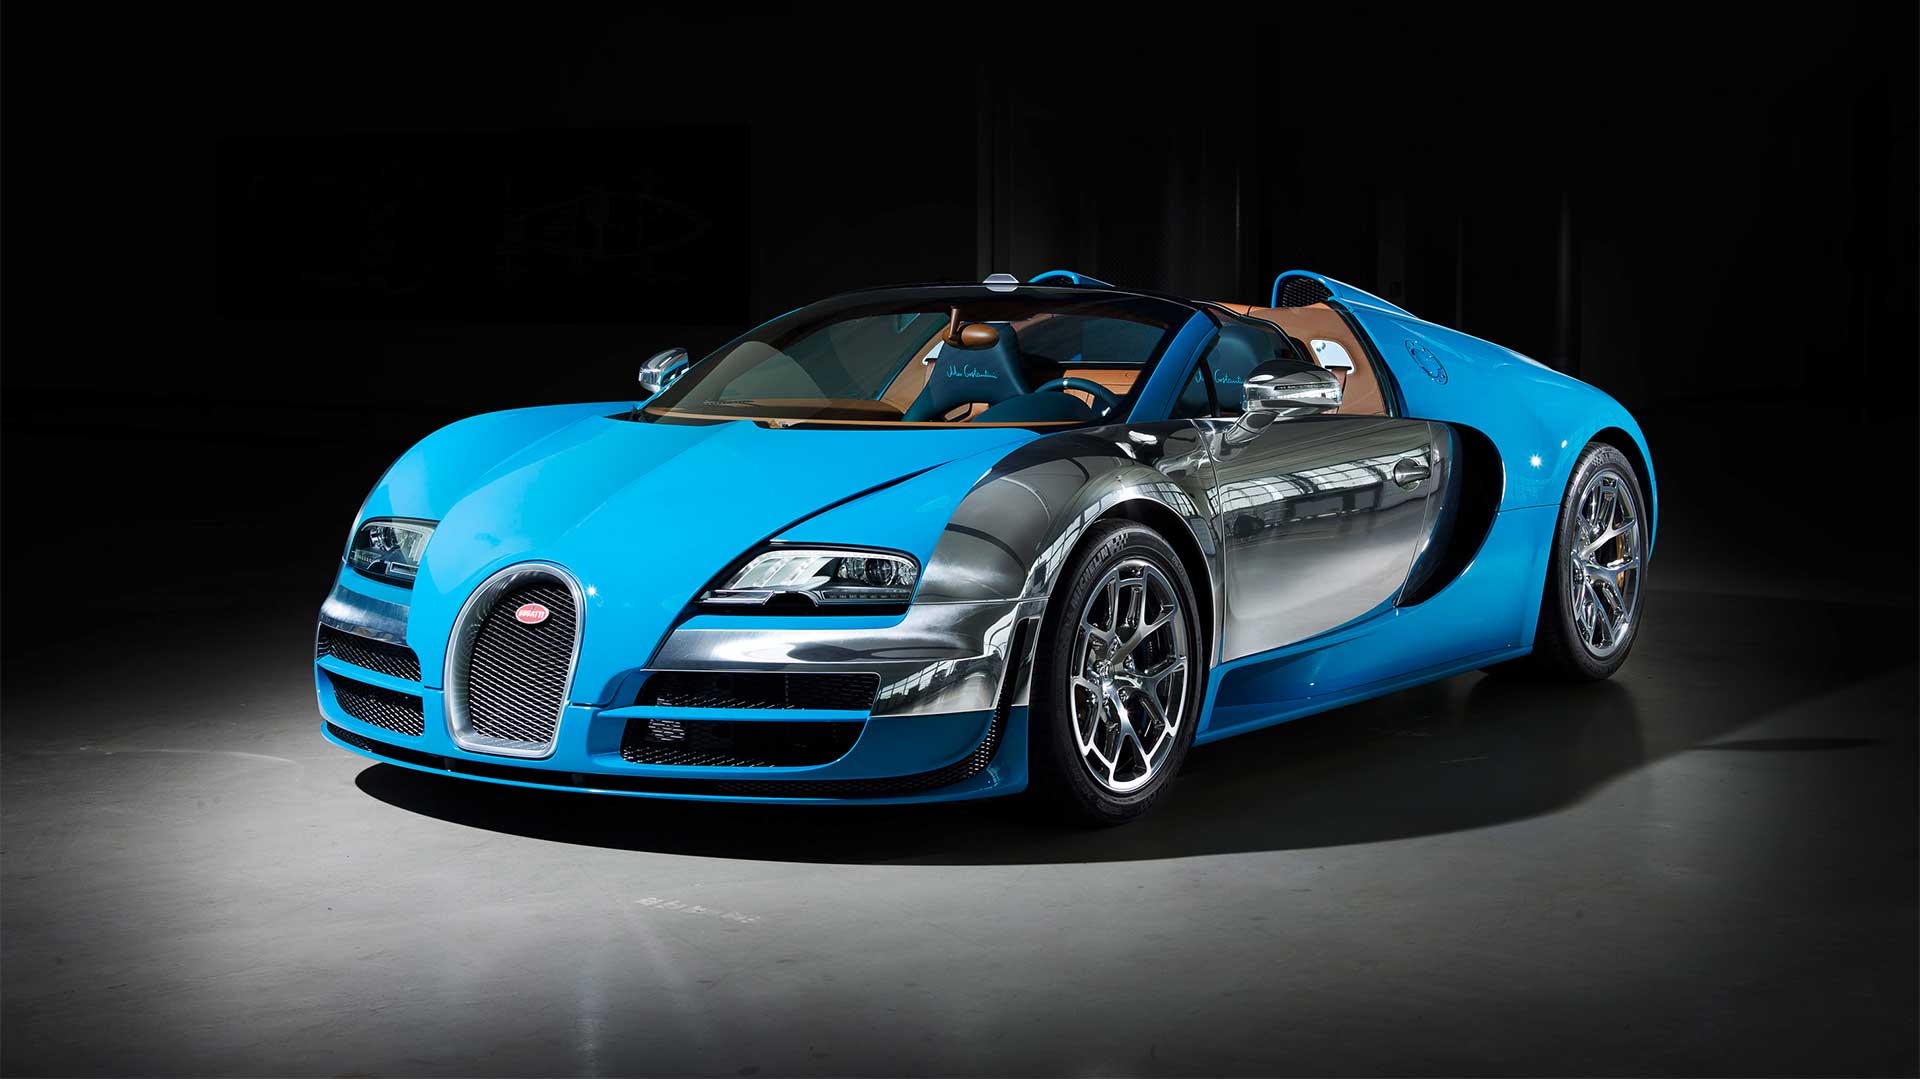 The 2013 Bugatti Veyron 